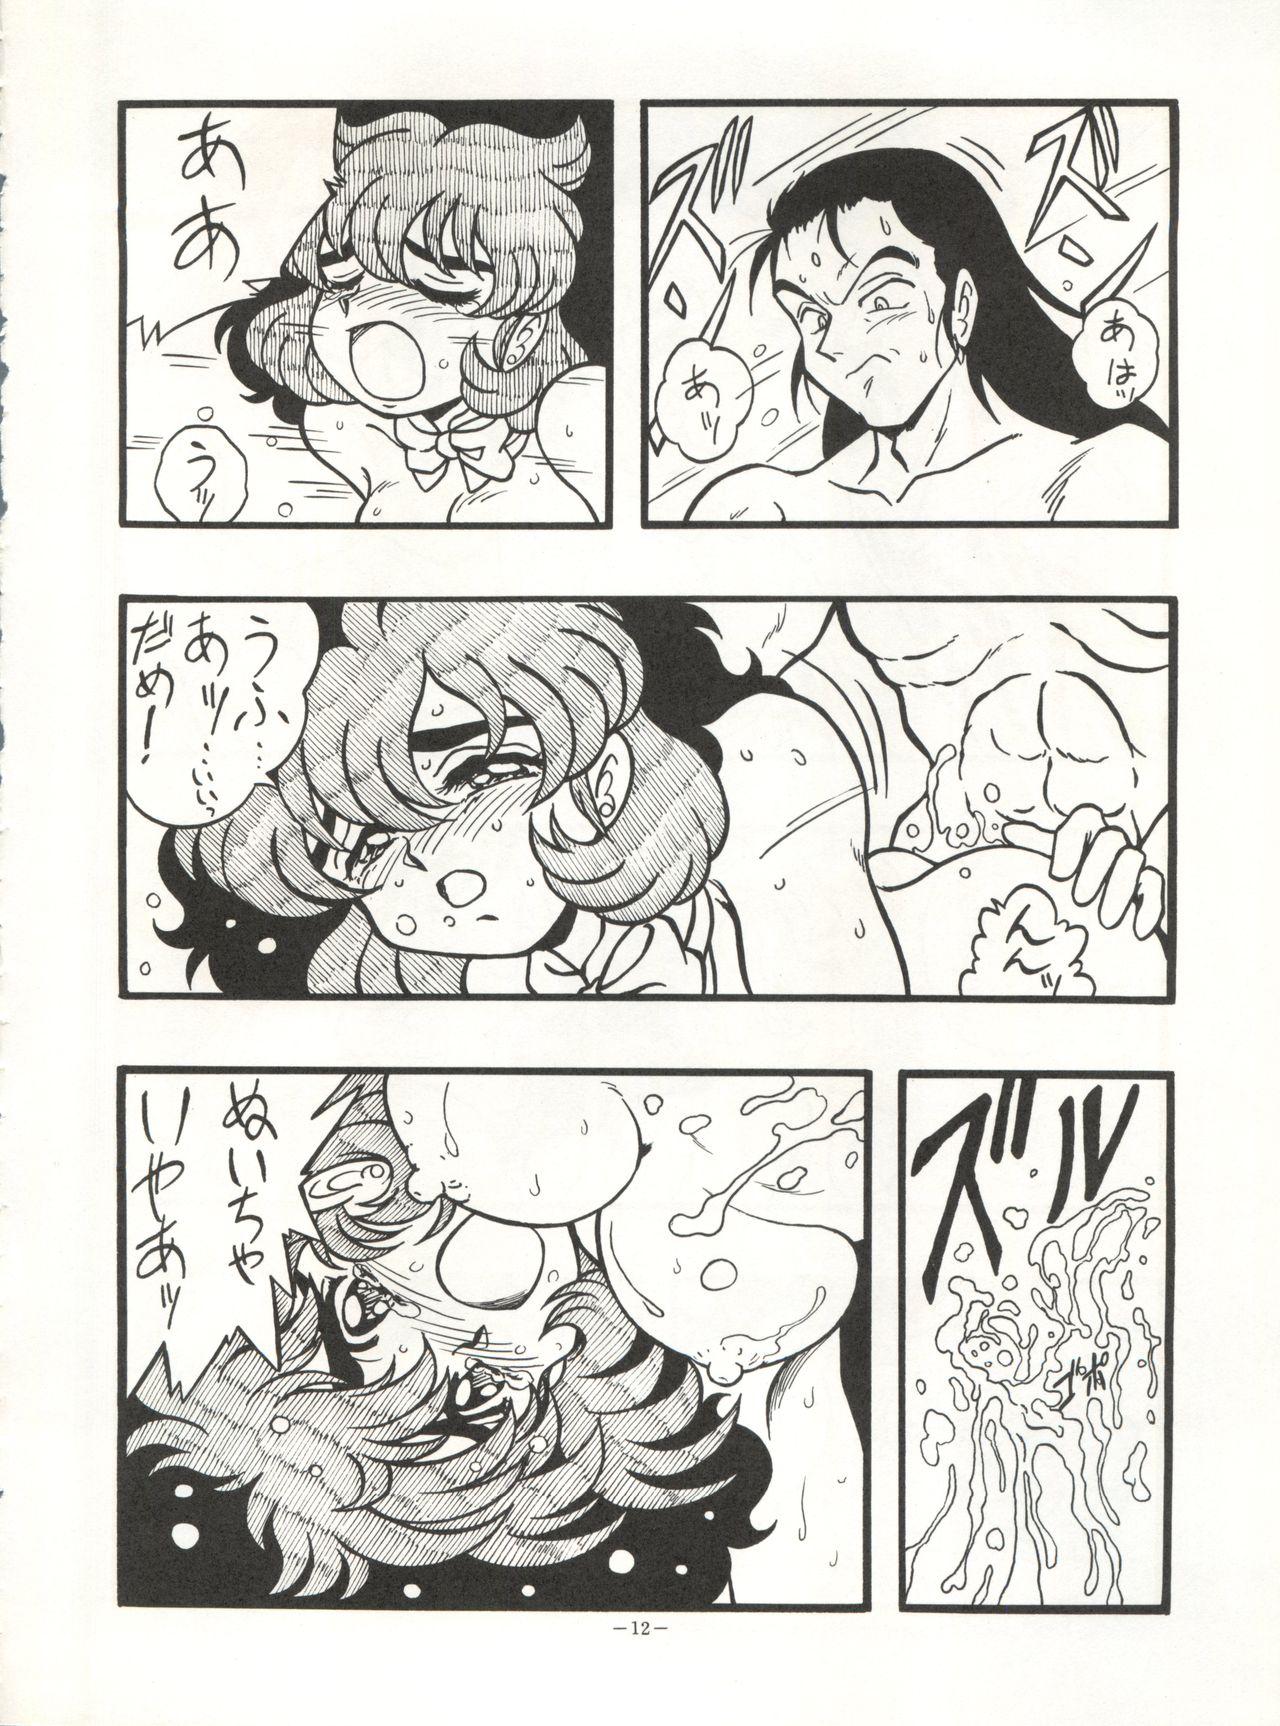 Hermosa Look Out 26 - Sailor moon Ranma 12 City hunter Genji tsuushin agedama Tinder - Page 12